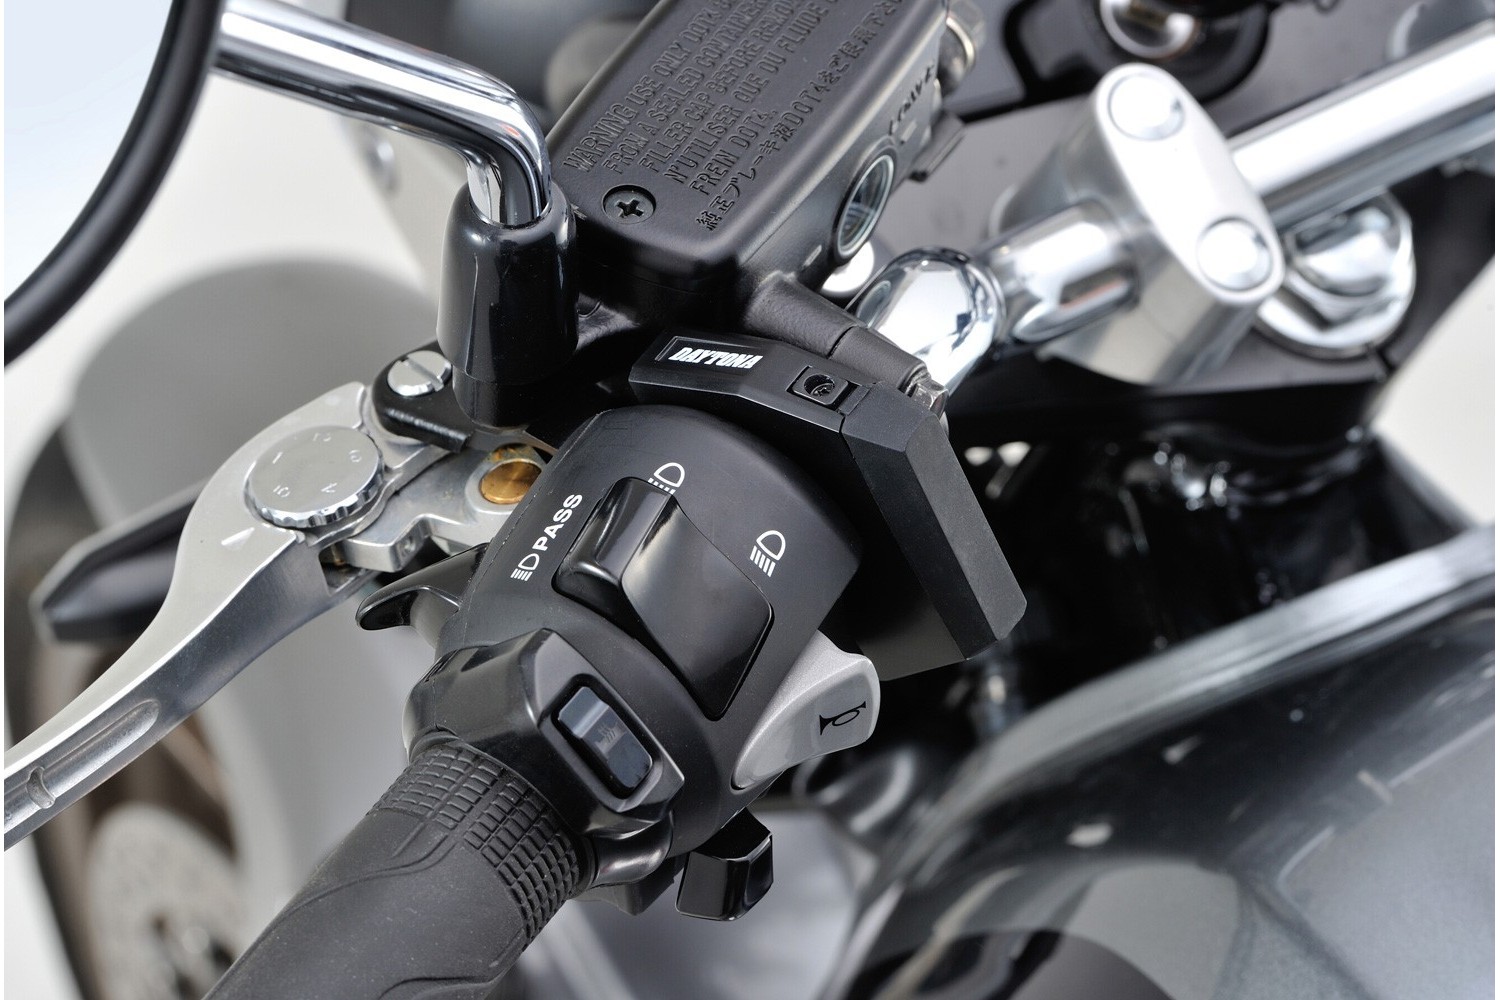 – USB-Adapter für Motorrad modifizieren